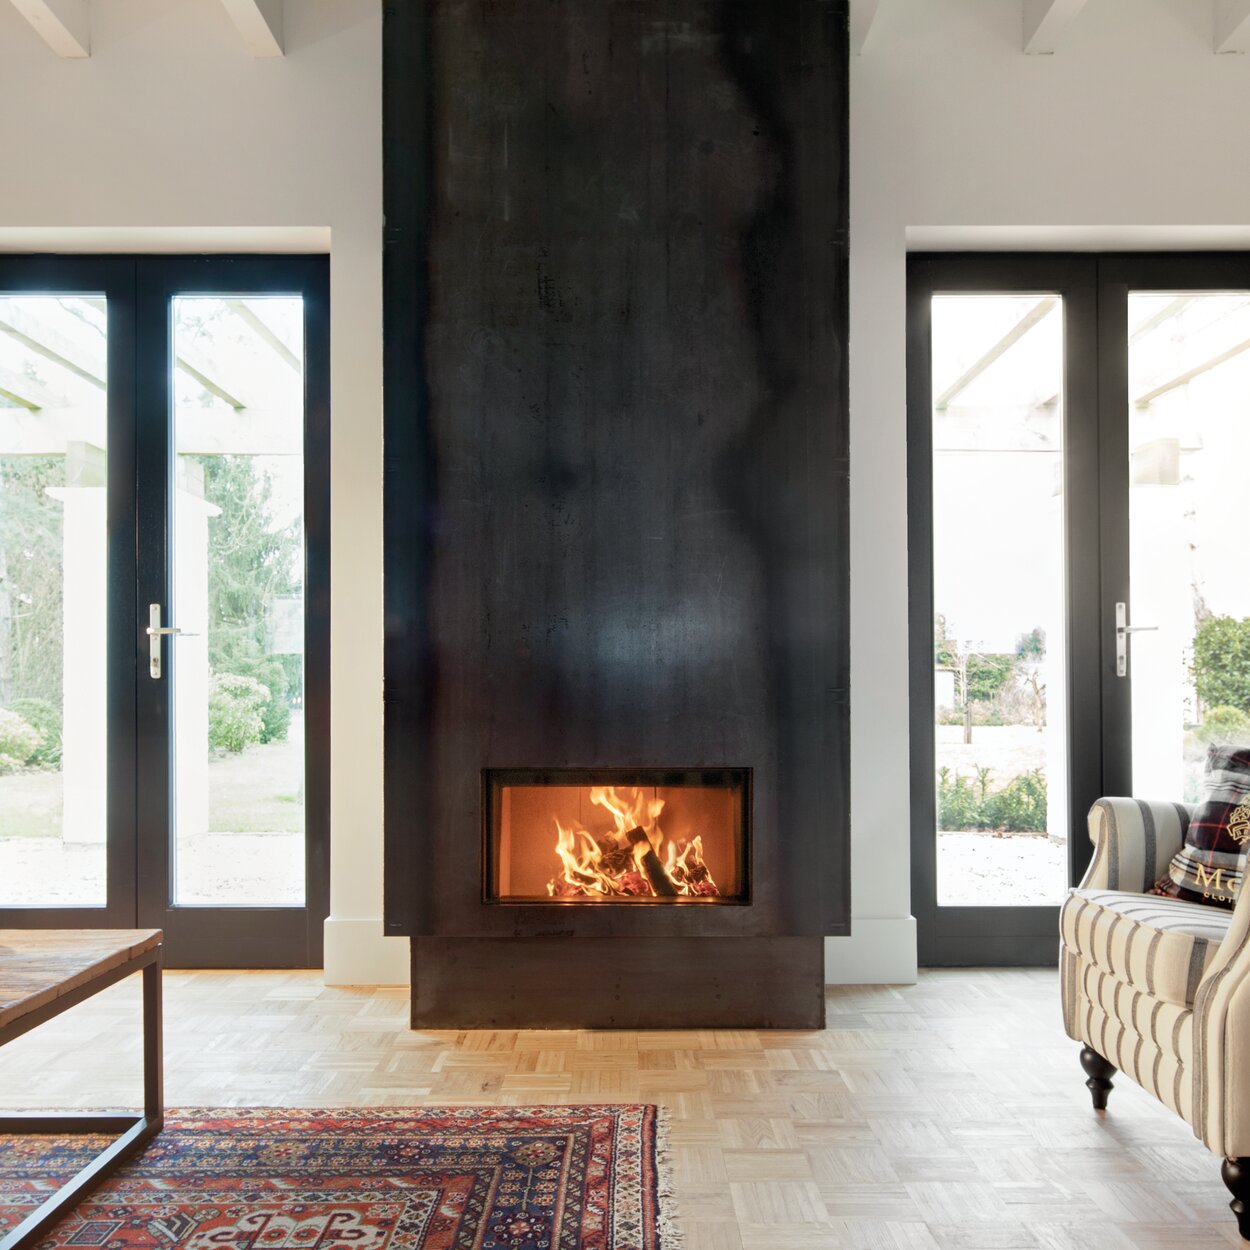 Cheminée à bois W70/33F de Kalfire avec revêtement en acier noir dans un salon clair, centré entre deux grandes portes-fenêtres